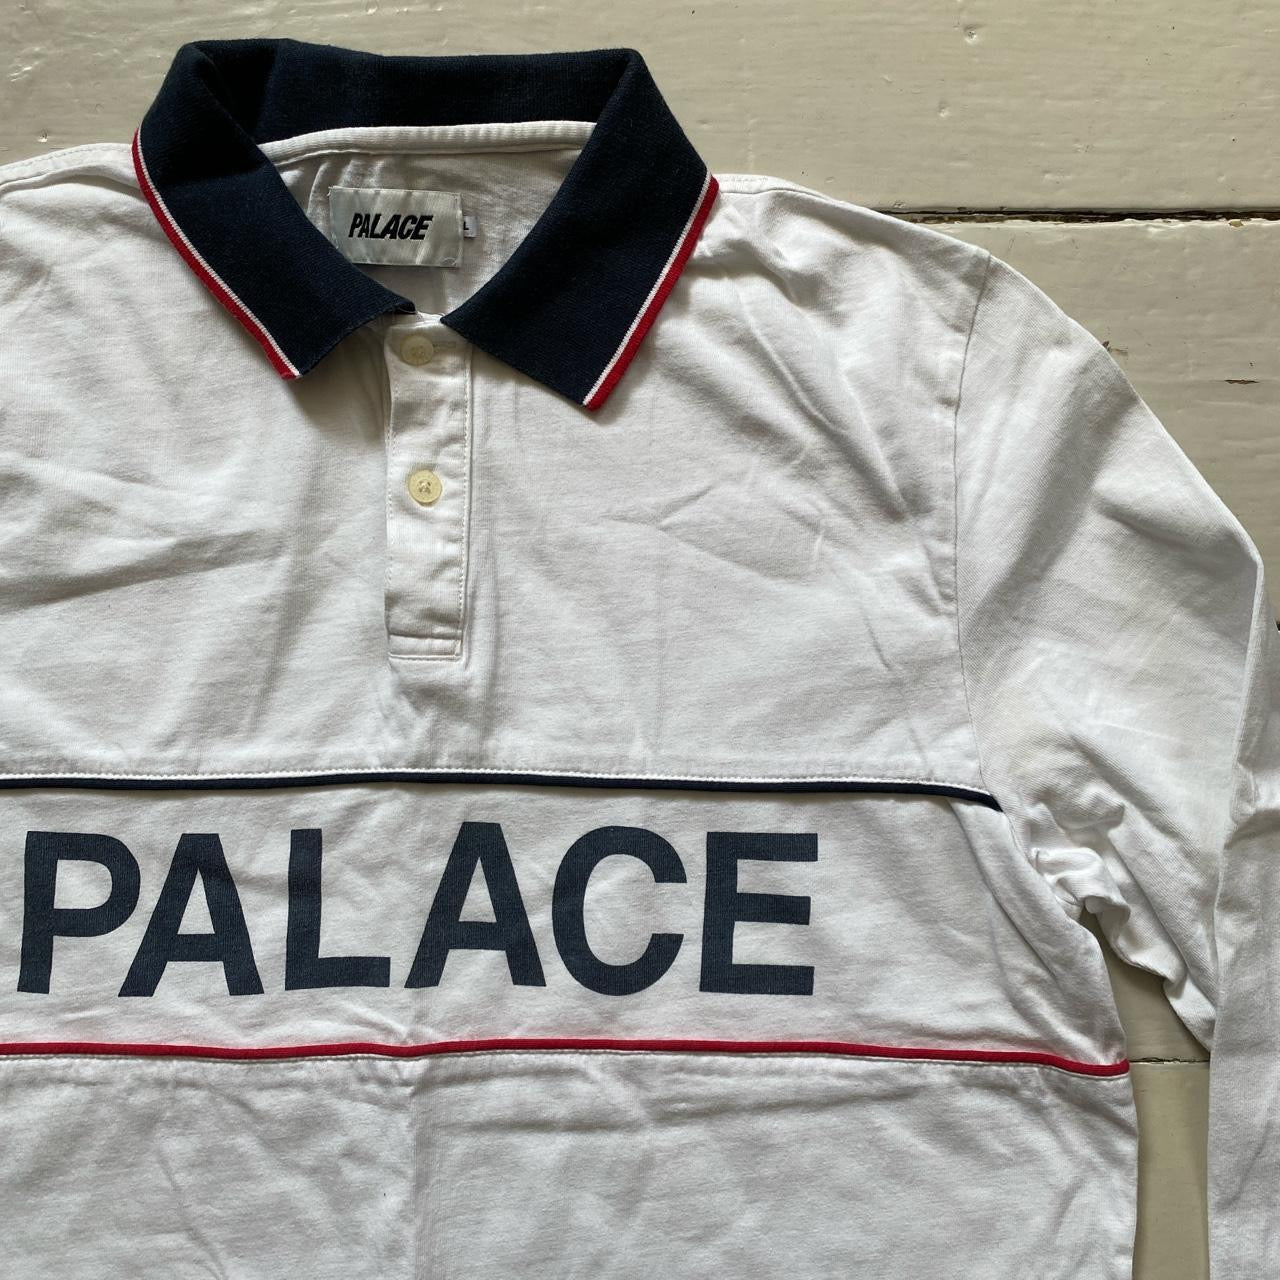 Palace White Polo Shirt (Large)